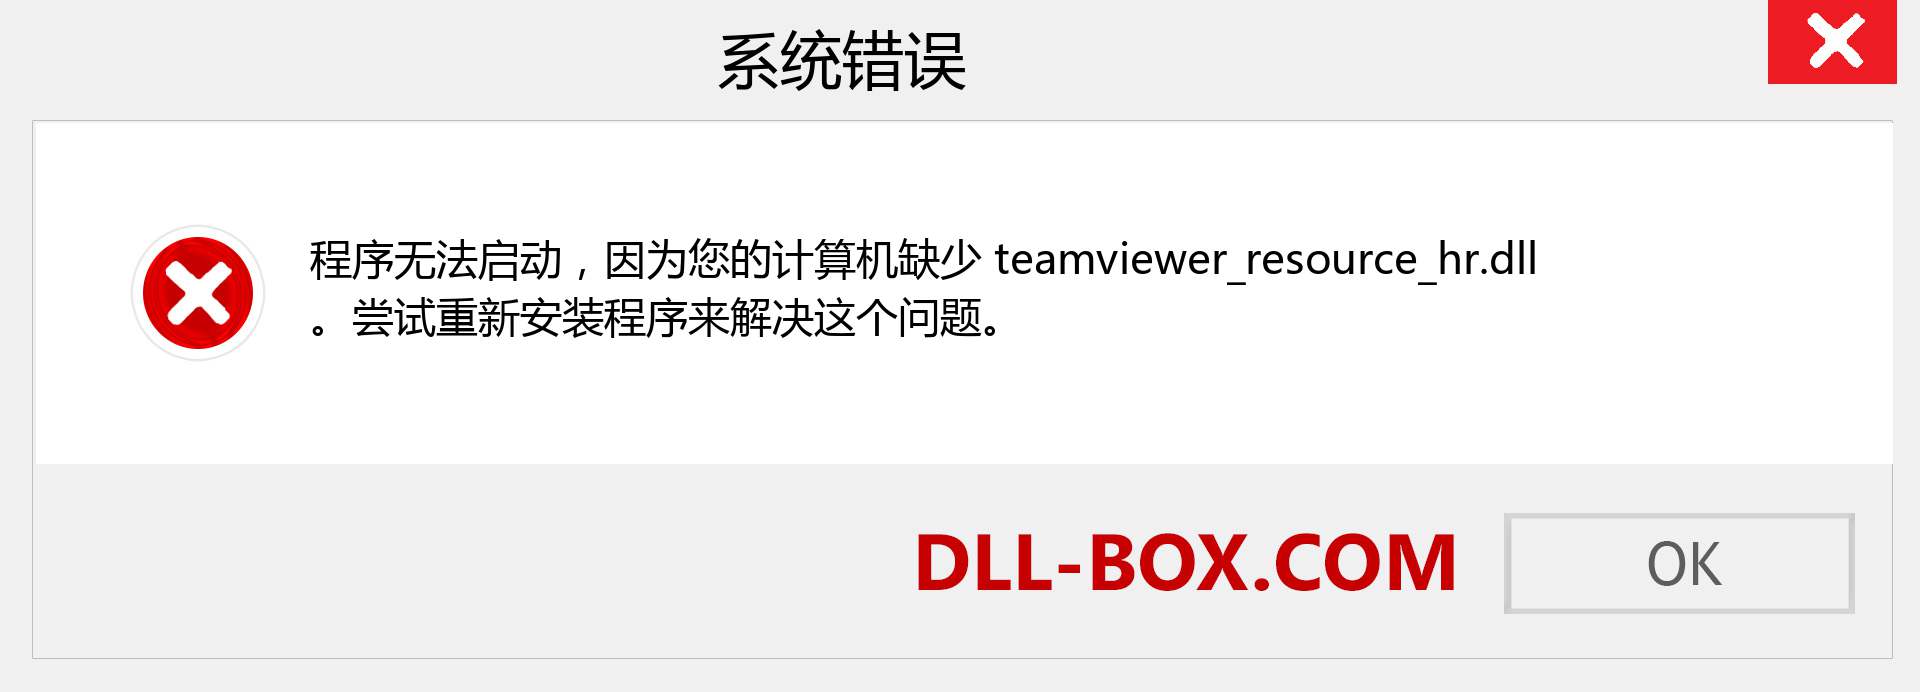 teamviewer_resource_hr.dll 文件丢失？。 适用于 Windows 7、8、10 的下载 - 修复 Windows、照片、图像上的 teamviewer_resource_hr dll 丢失错误